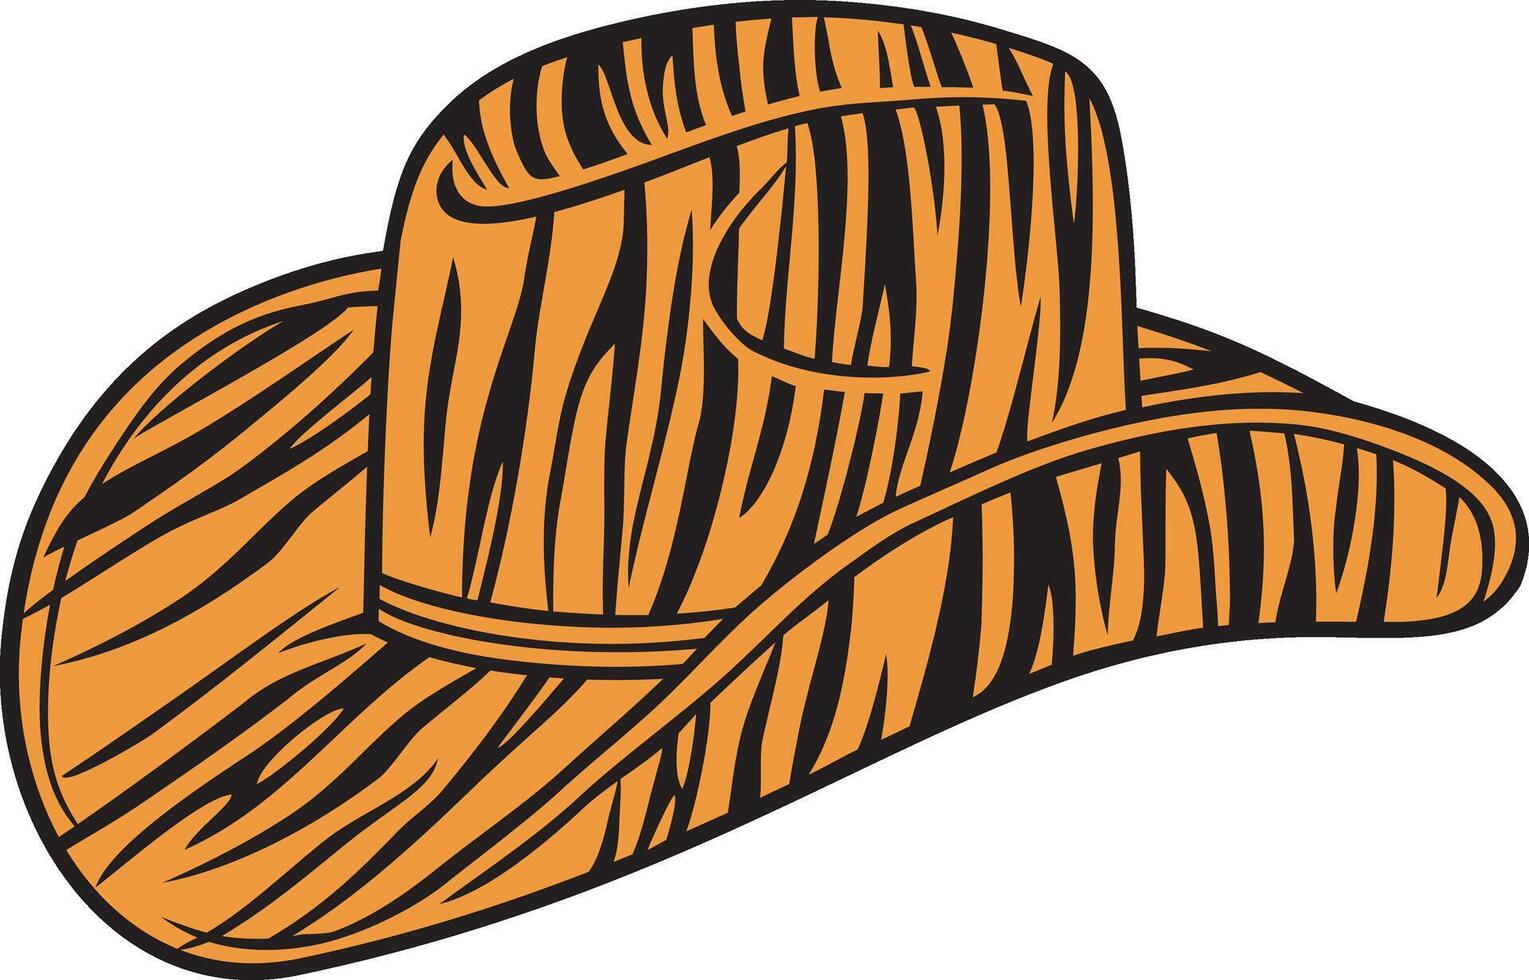 cow-boy chapeau avec tigre impression couleur. vecteur illustration.